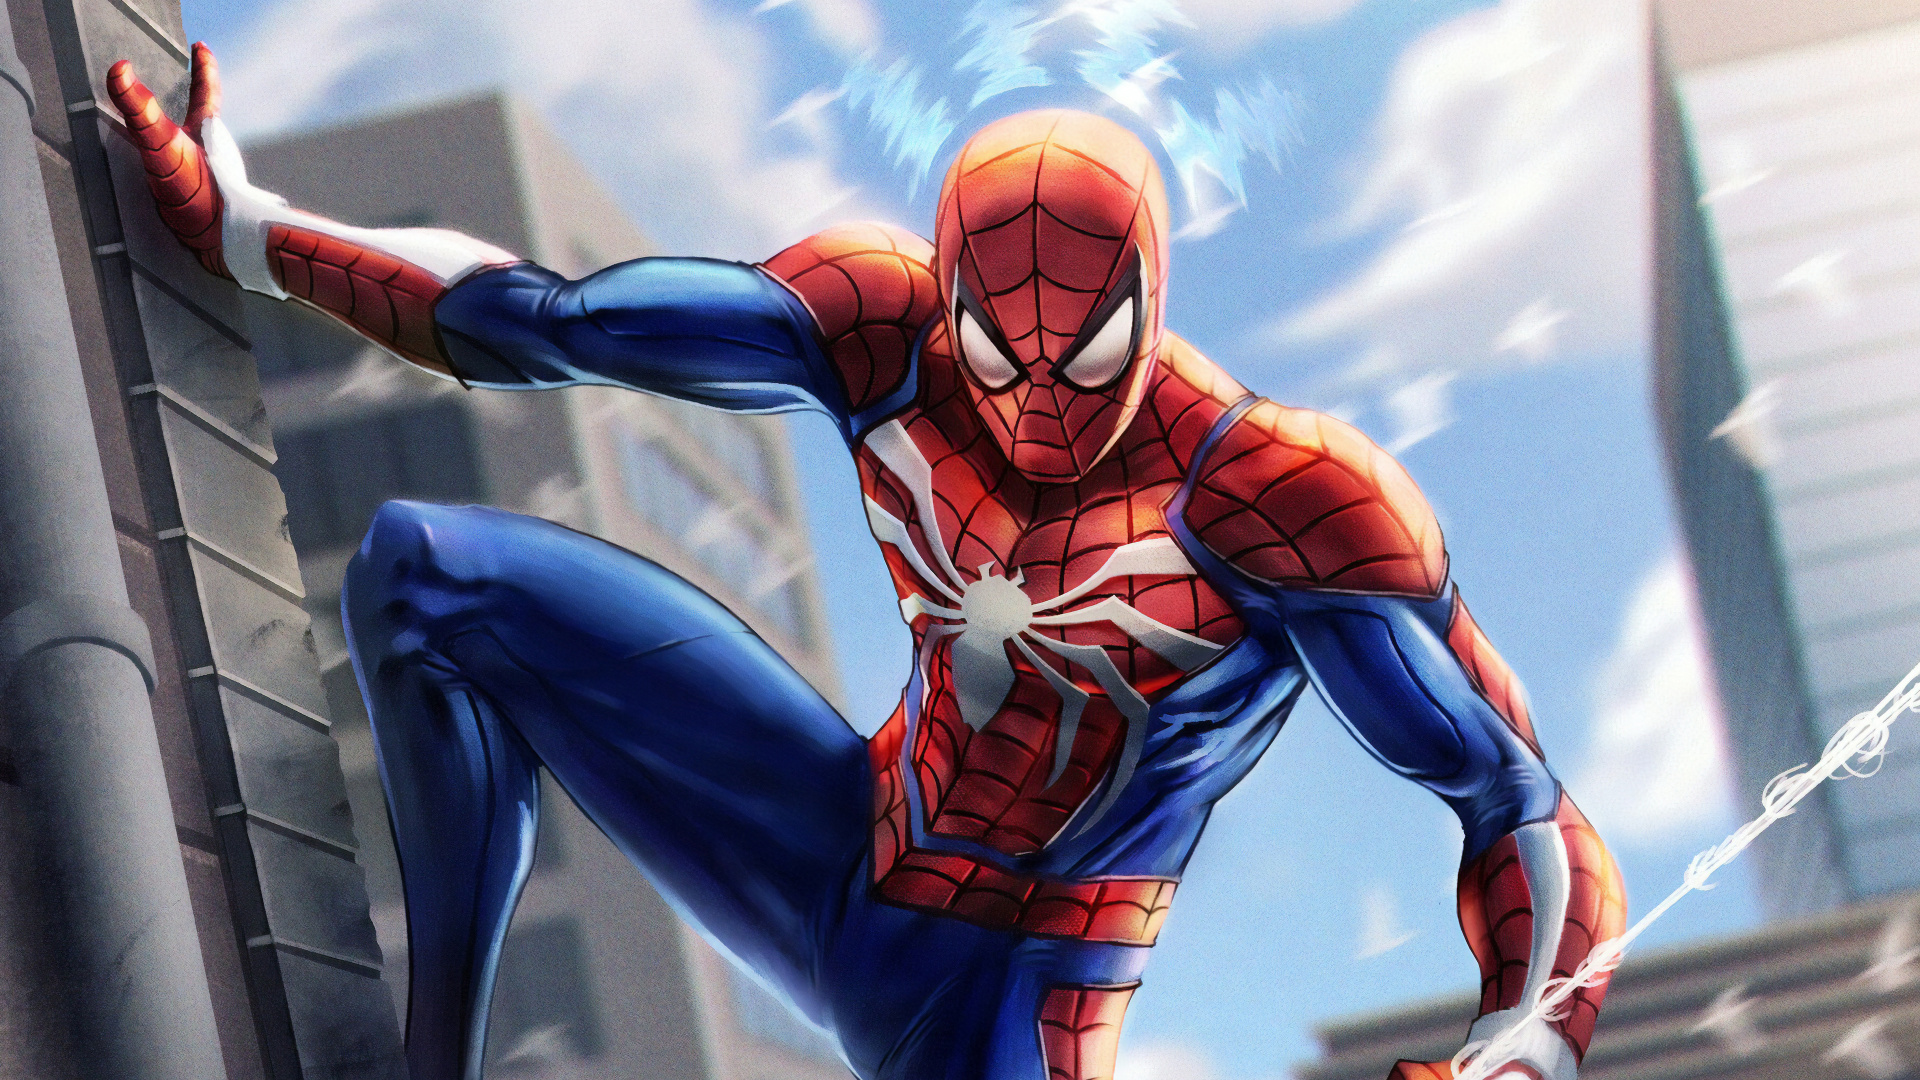 Wallpaper Spider Man 3 d Illustration, Full HD, HDTV, 1080p 16:9 ...